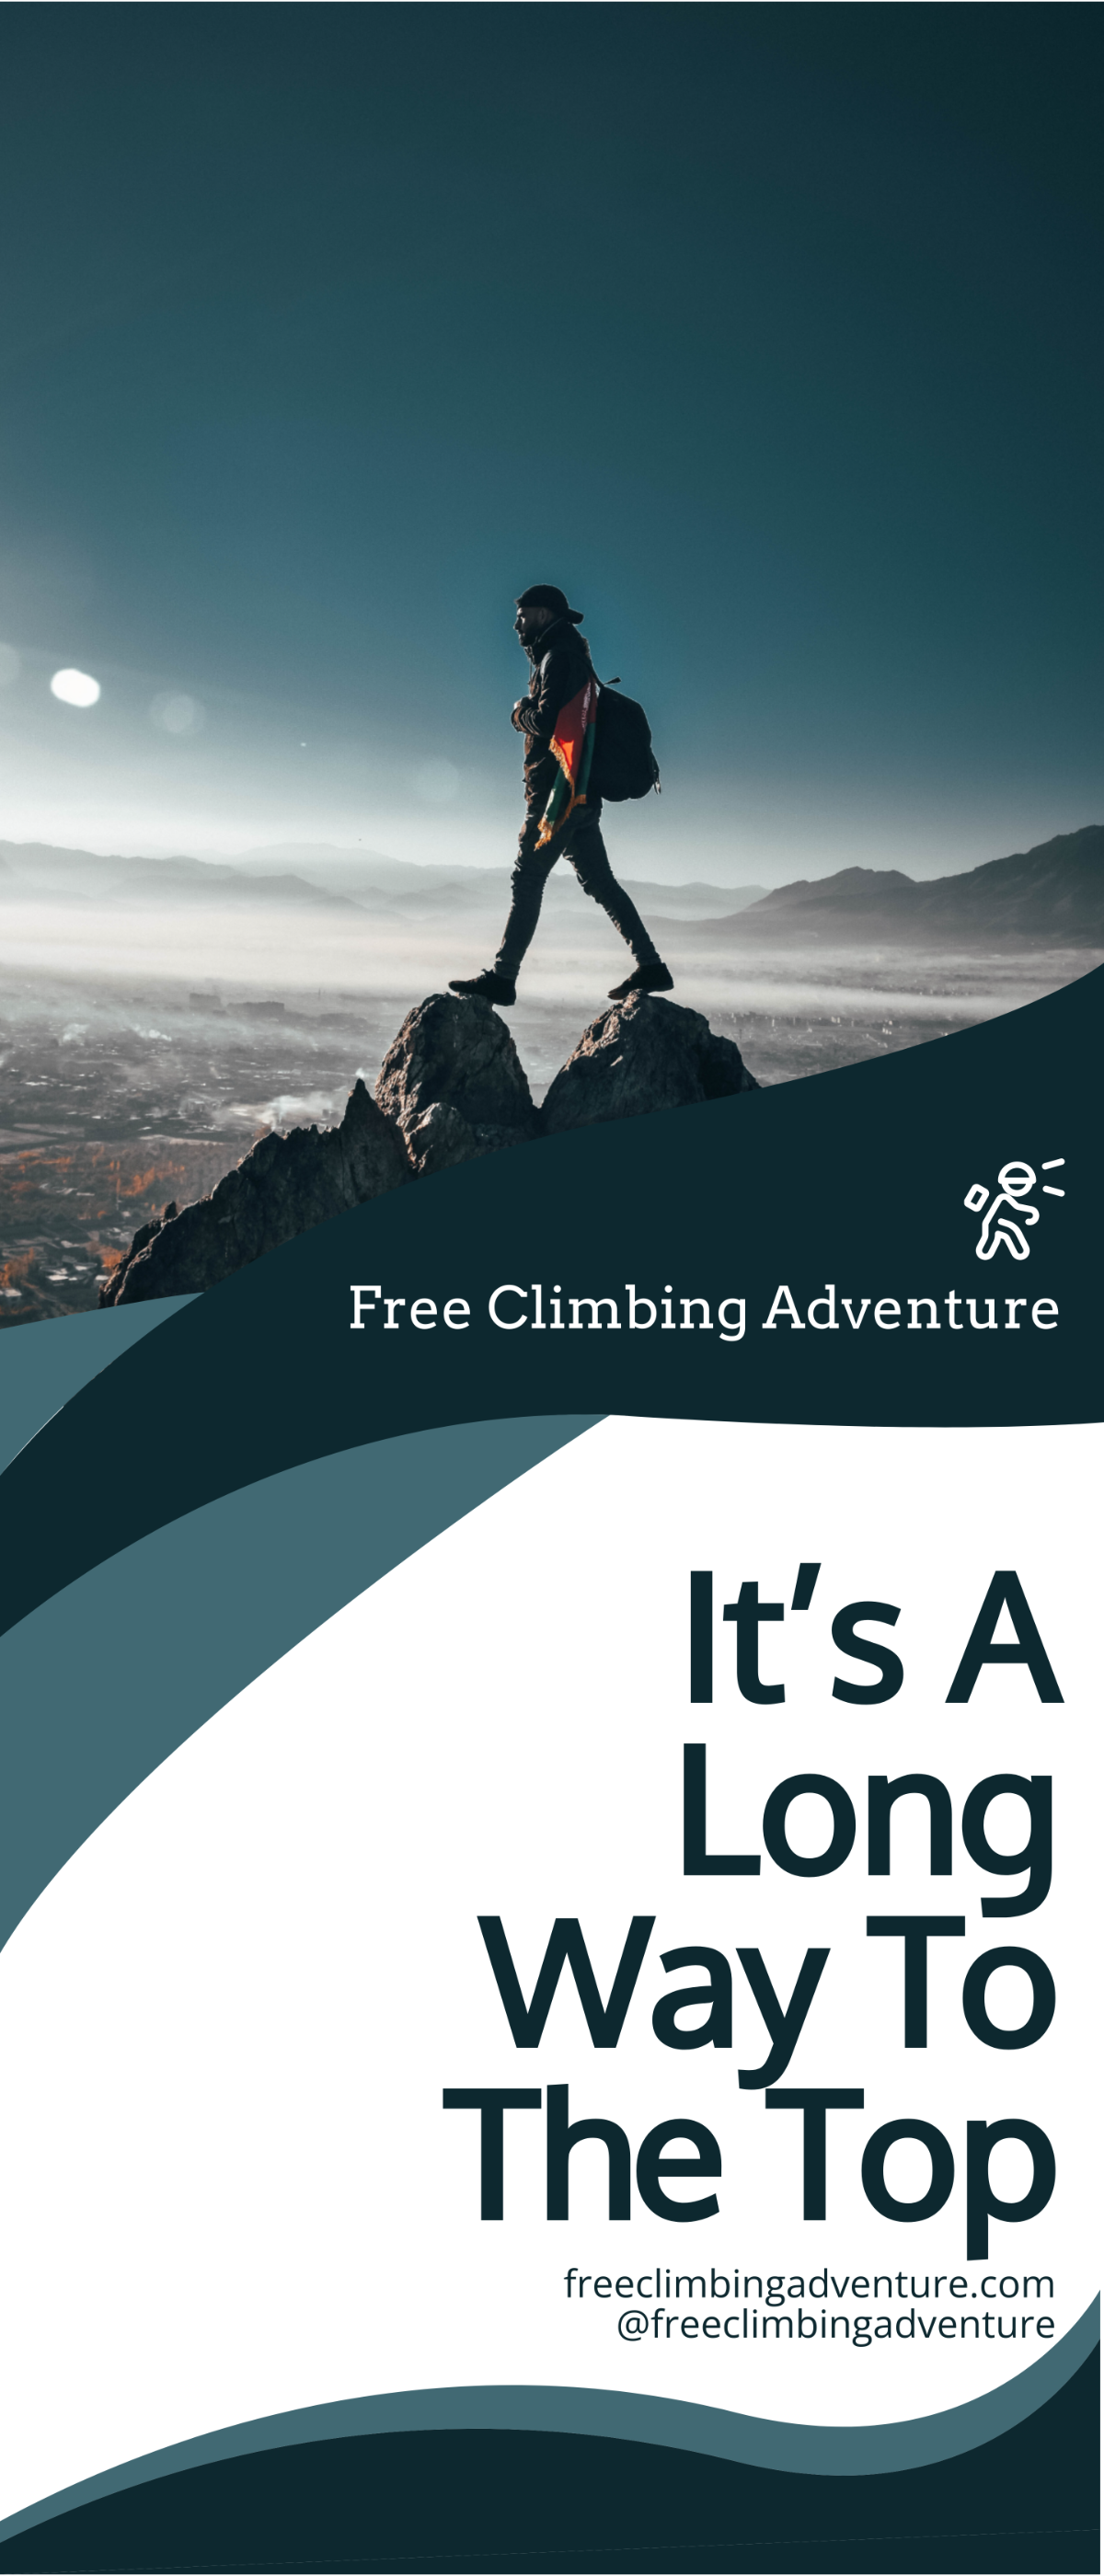 Free Climbing Sport Roll-Up Banner Template